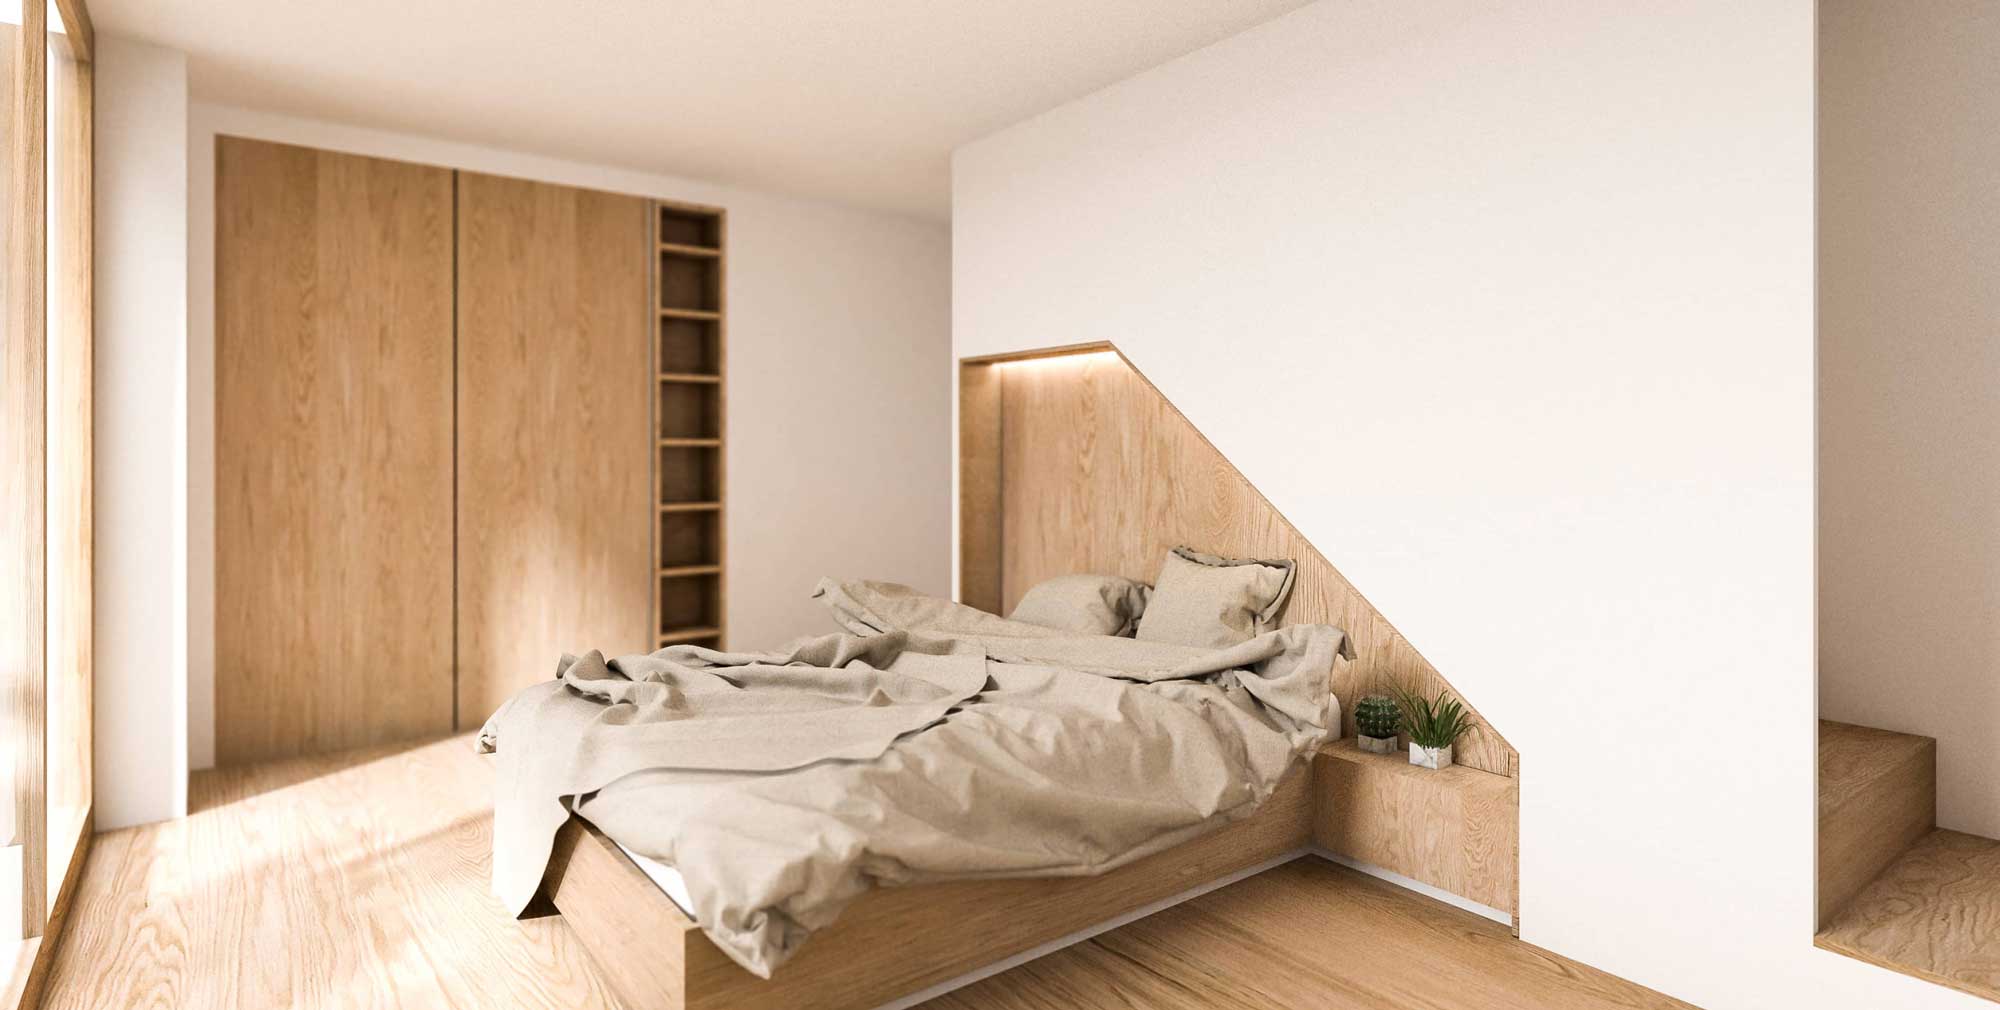 Innenarchitektur Visualisierung Schlafzimmer | Umbau Architektur | Nähe München, Deutschland